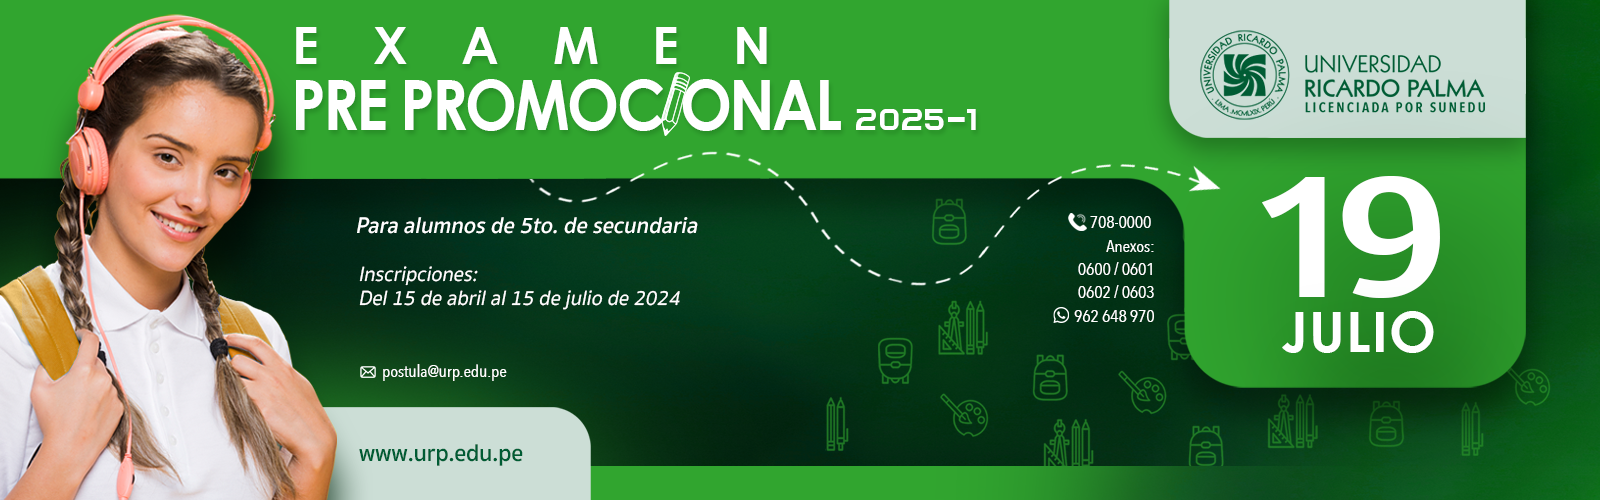 EXAMEN PRE-PROMOCIONAL 2025-I